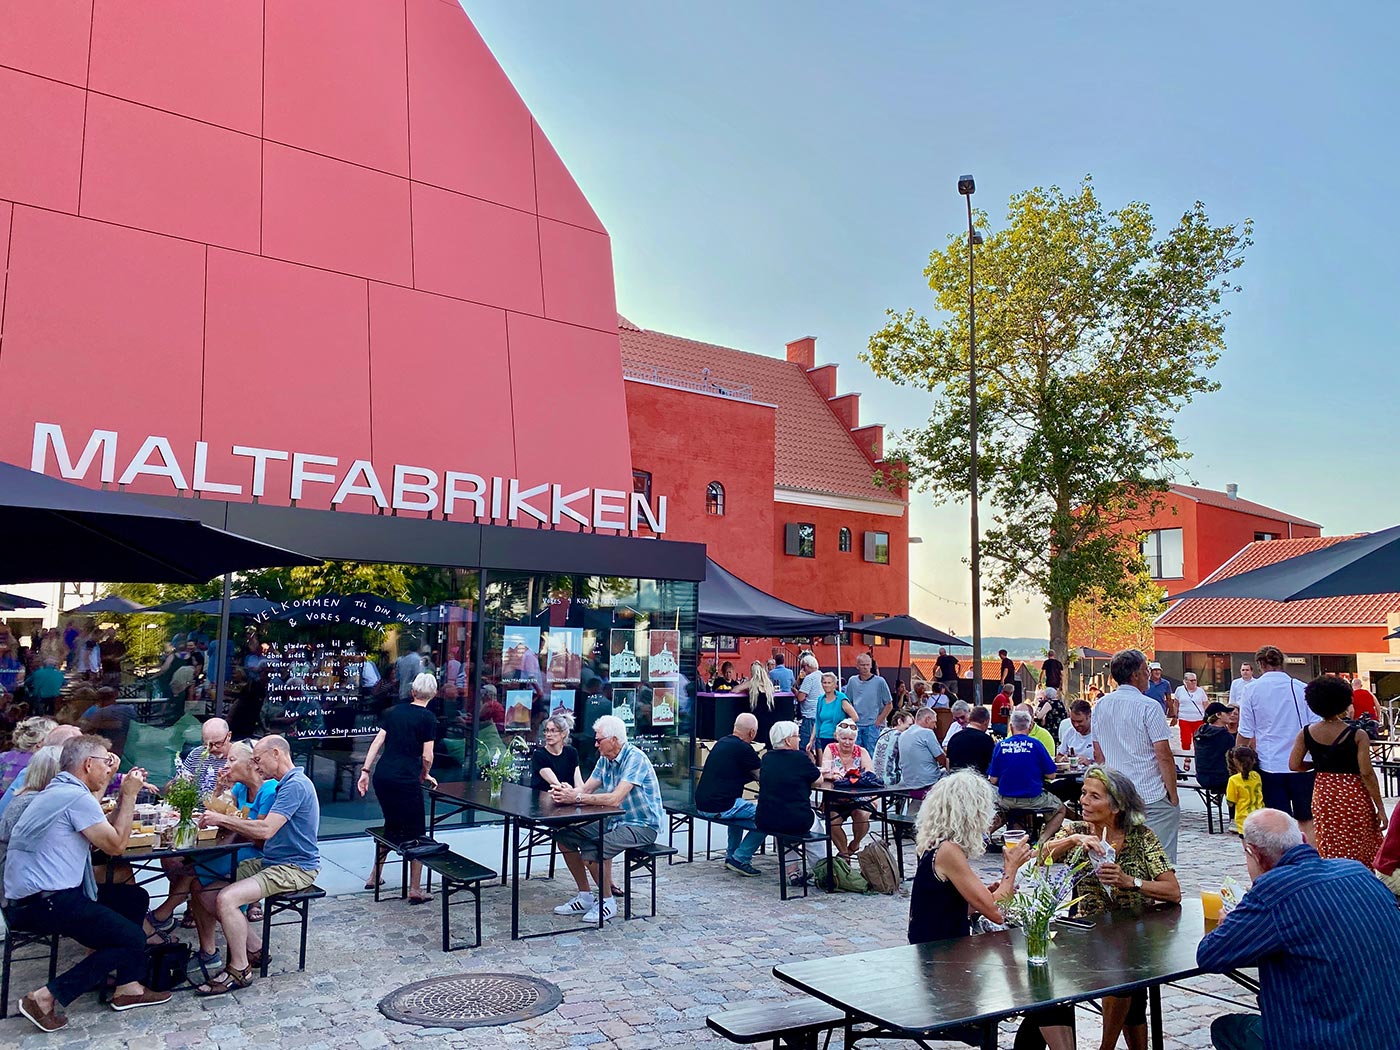 Glade mennesker, der nyder street food, øl og solskin i gården hos Maltfabrikken i Ebeltoft